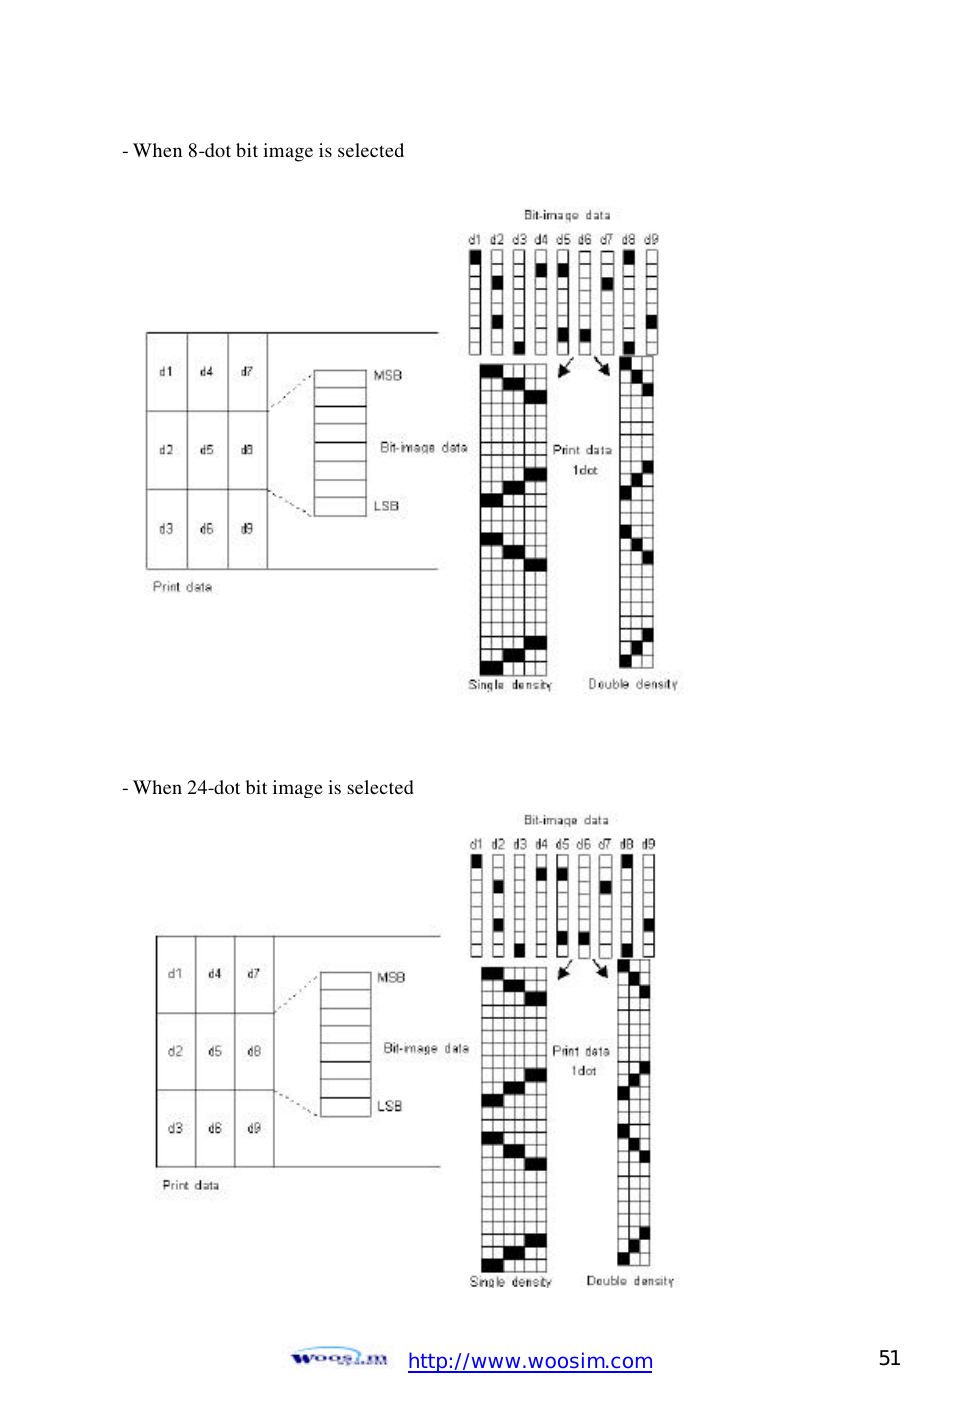  http://www.woosim.com 51                                - When 8-dot bit image is selected                 - When 24-dot bit image is selected  